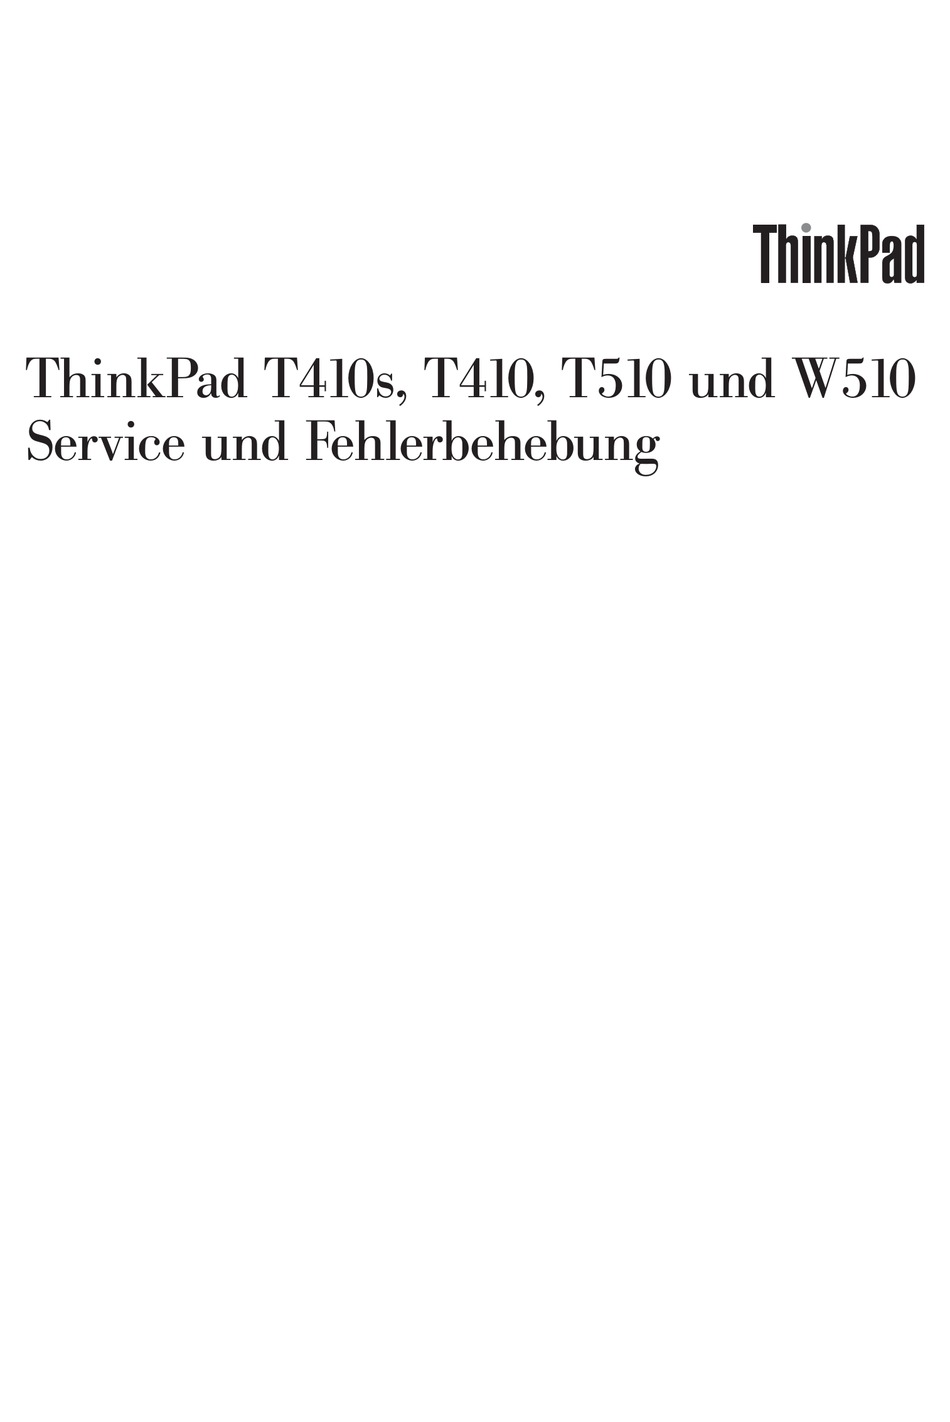 lenovo thinkpad t410 handbuch deutsch